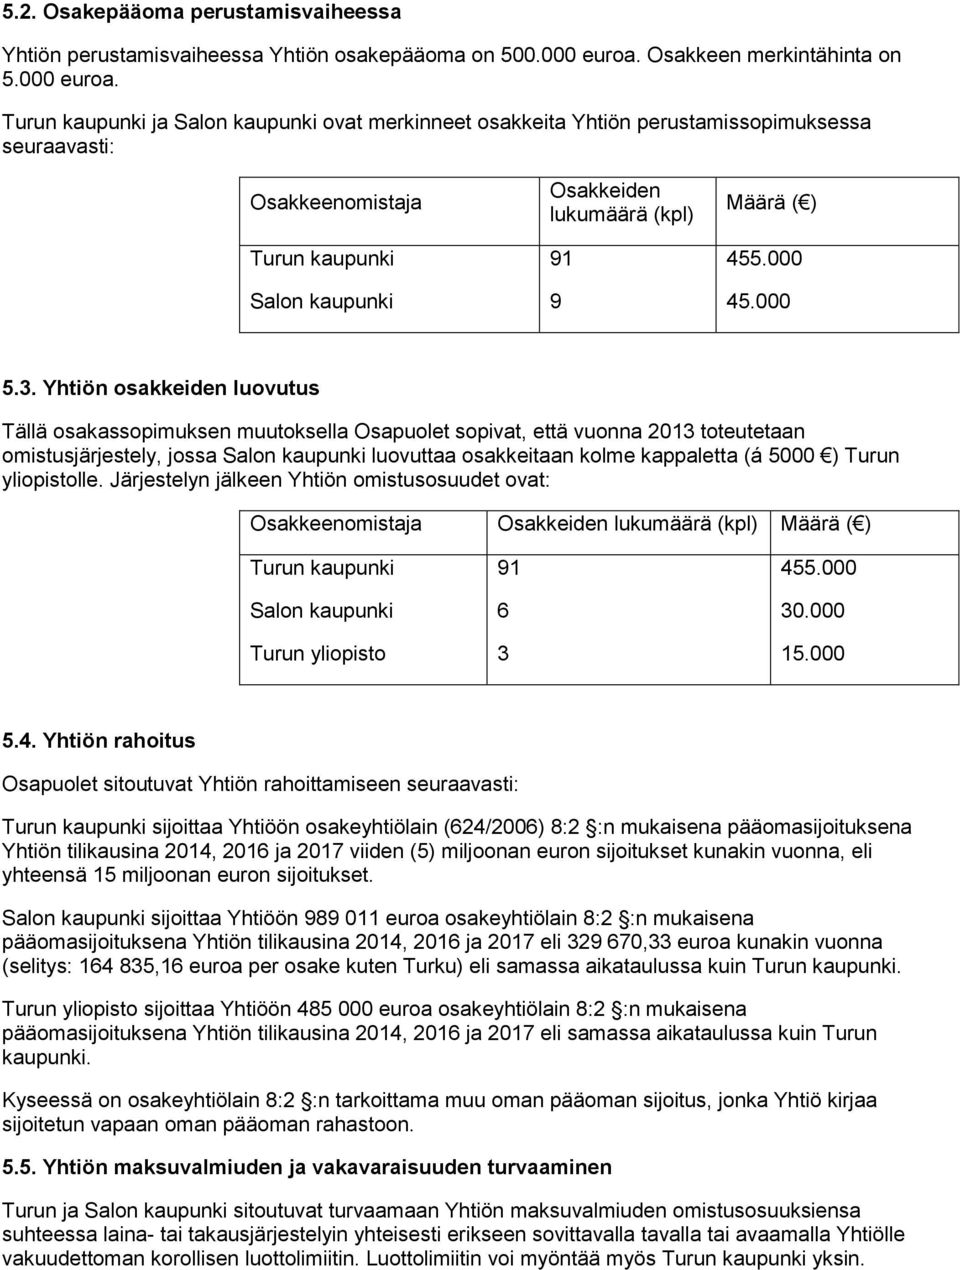 Turun kaupunki ja Salon kaupunki ovat merkinneet osakkeita Yhtiön perustamissopimuksessa seuraavasti: Osakkeenomistaja Turun kaupunki Salon kaupunki Osakkeiden lukumäärä (kpl) 91 9 Määrä ( ) 455.